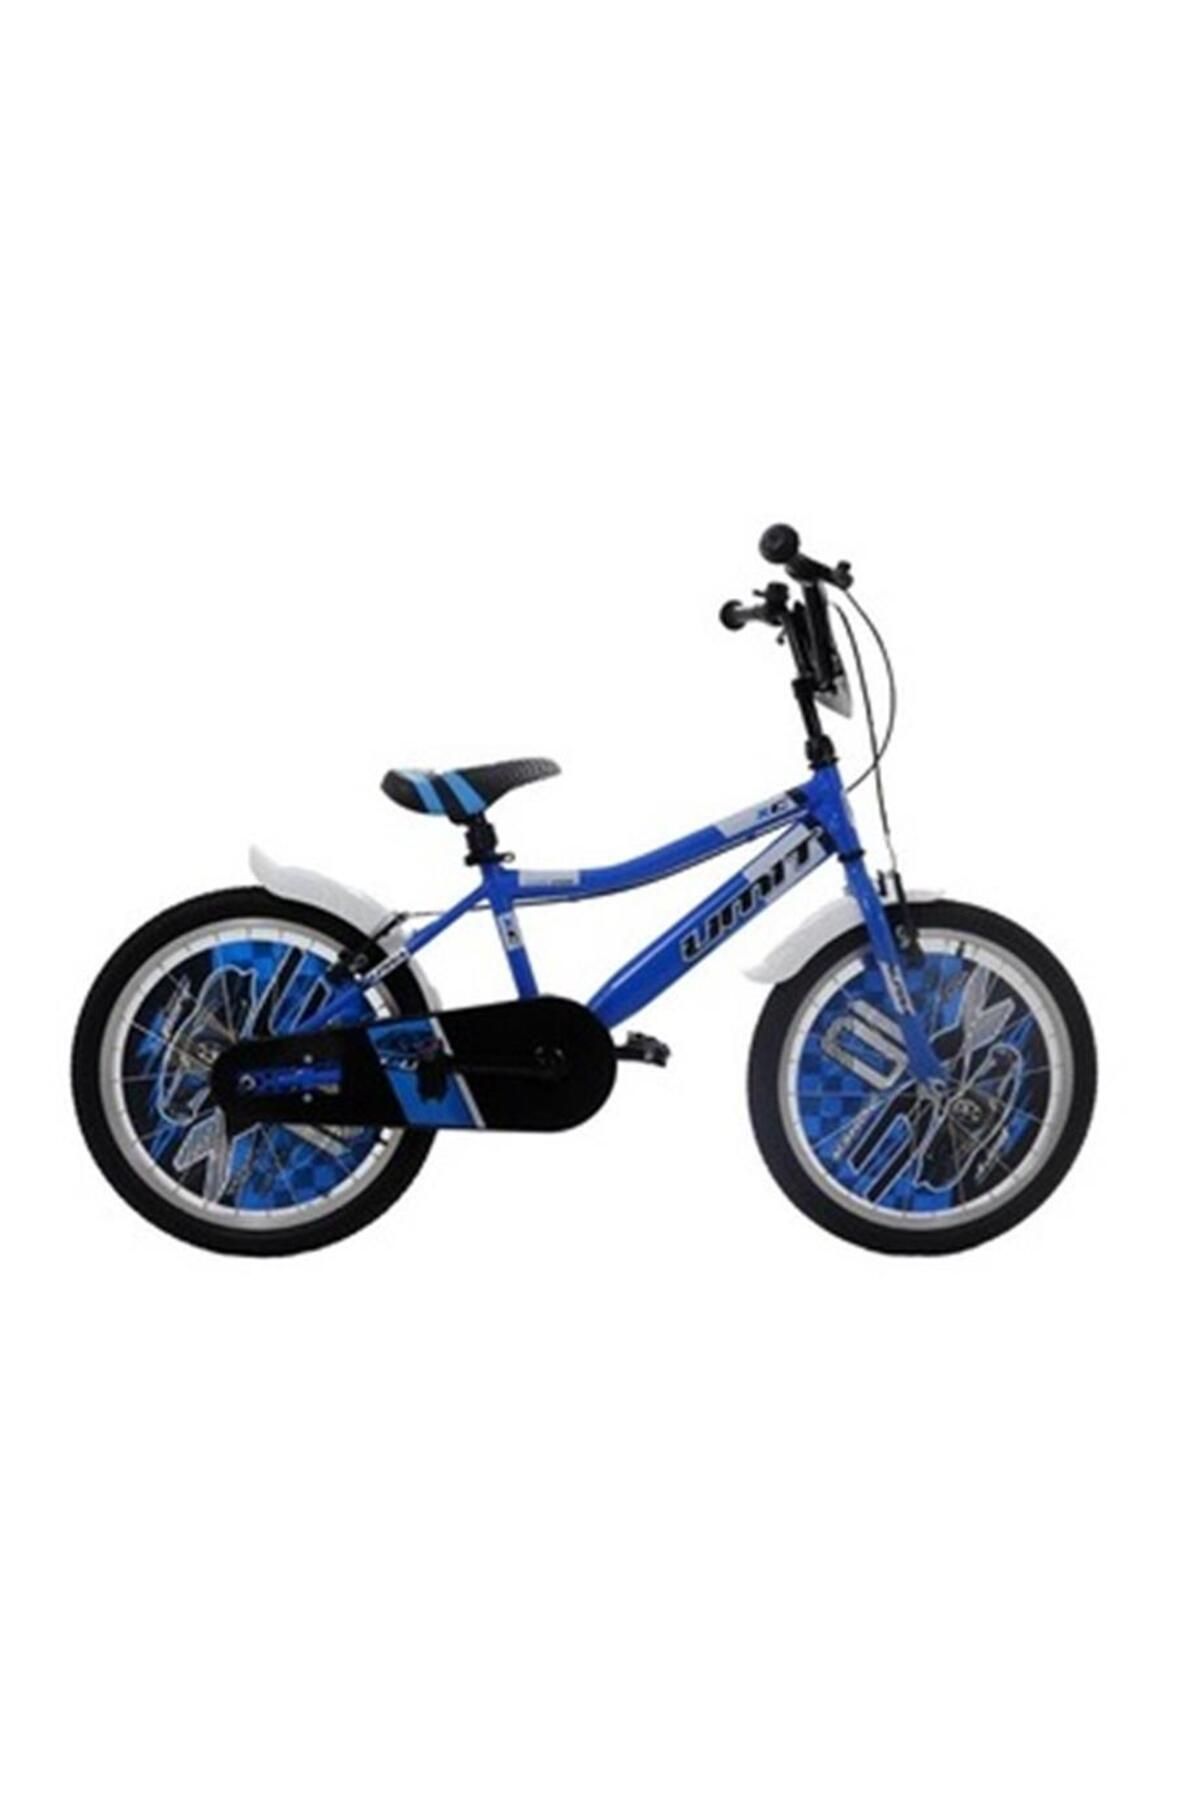 Ümit 2047 Alpına-m-bmx-v-erkek Çocuk Bisikleti 20 Jant Mavi